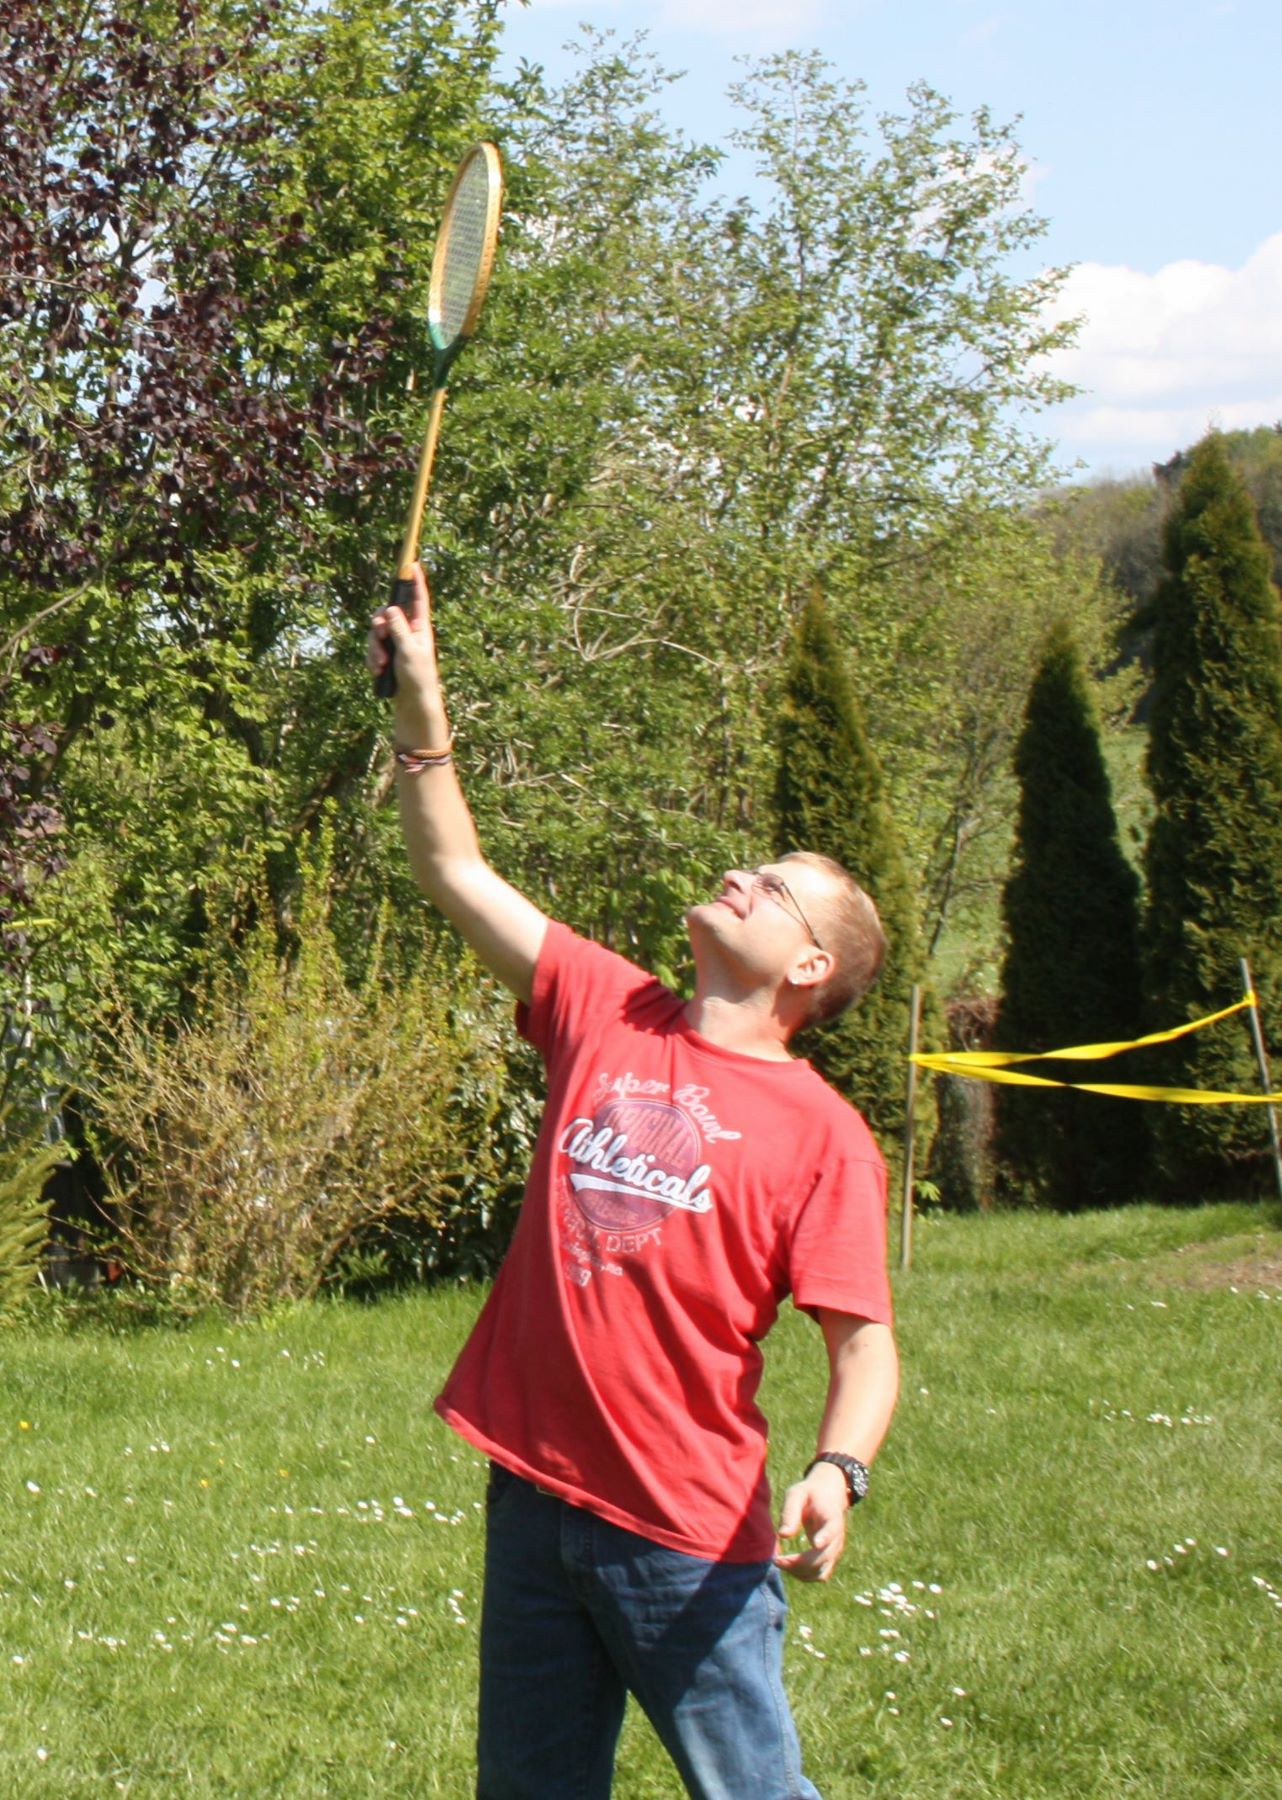 Ein Mann in einem roten T-Shirt hält einen Federballschläger in die Luft. Er wartet darauf, den Federball zu schlagen. Es ist sonnig und im Hintergrund sind Wiese und Bäume zu sehen.